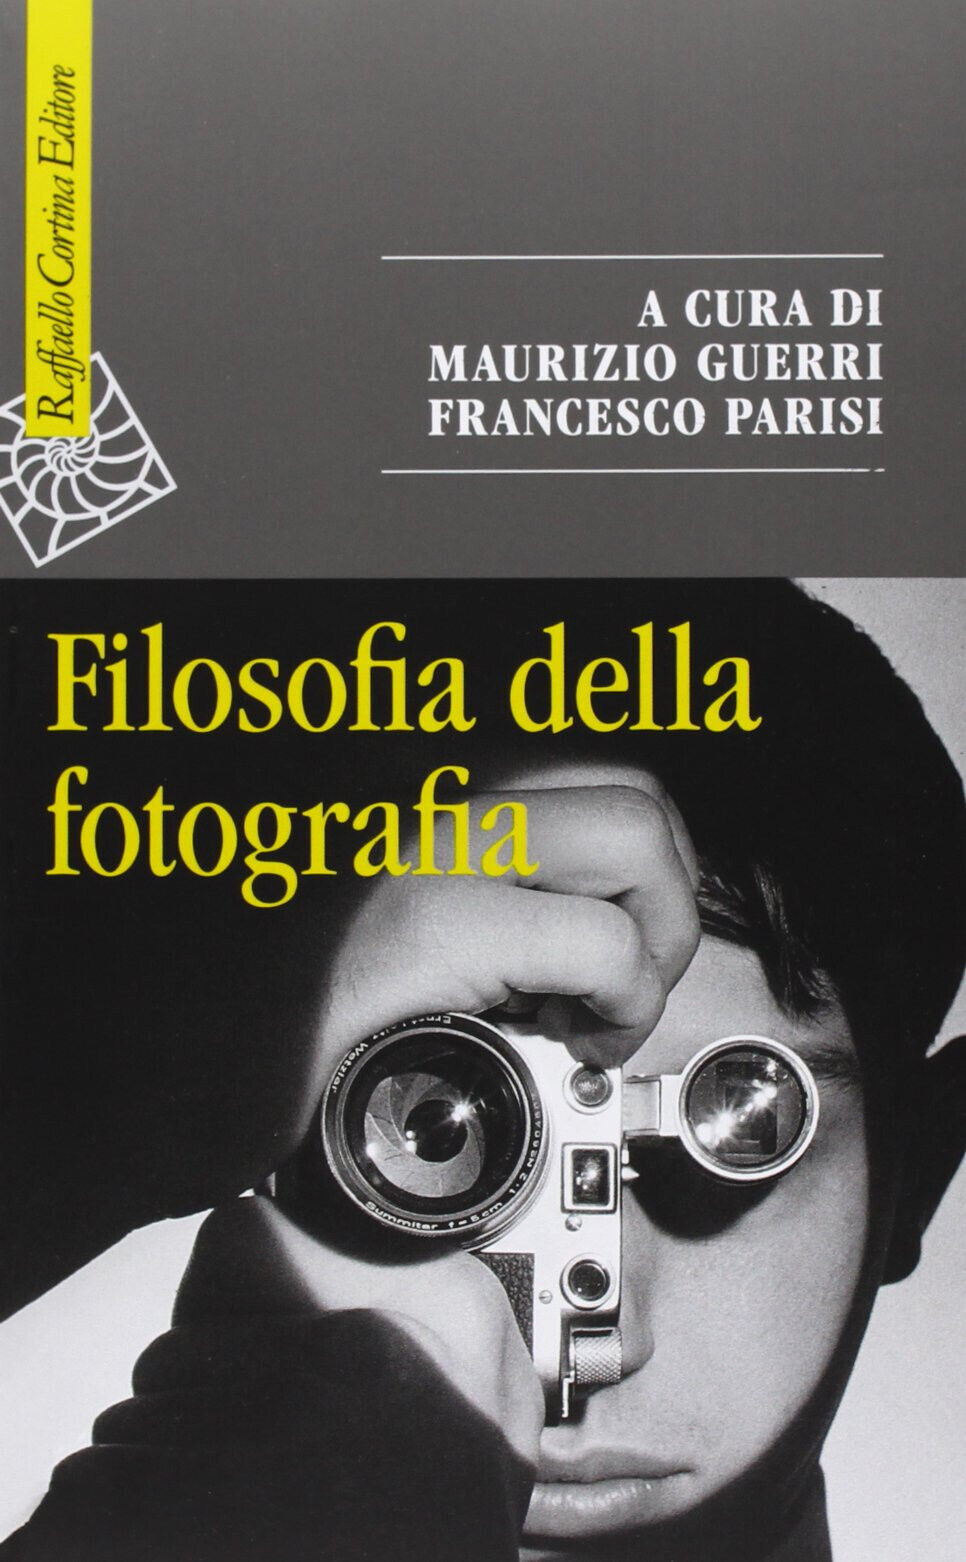 Filosofia della fotografia - M. Guerri, F. Parisi - Cortina Raffaello, 2013 libro usato